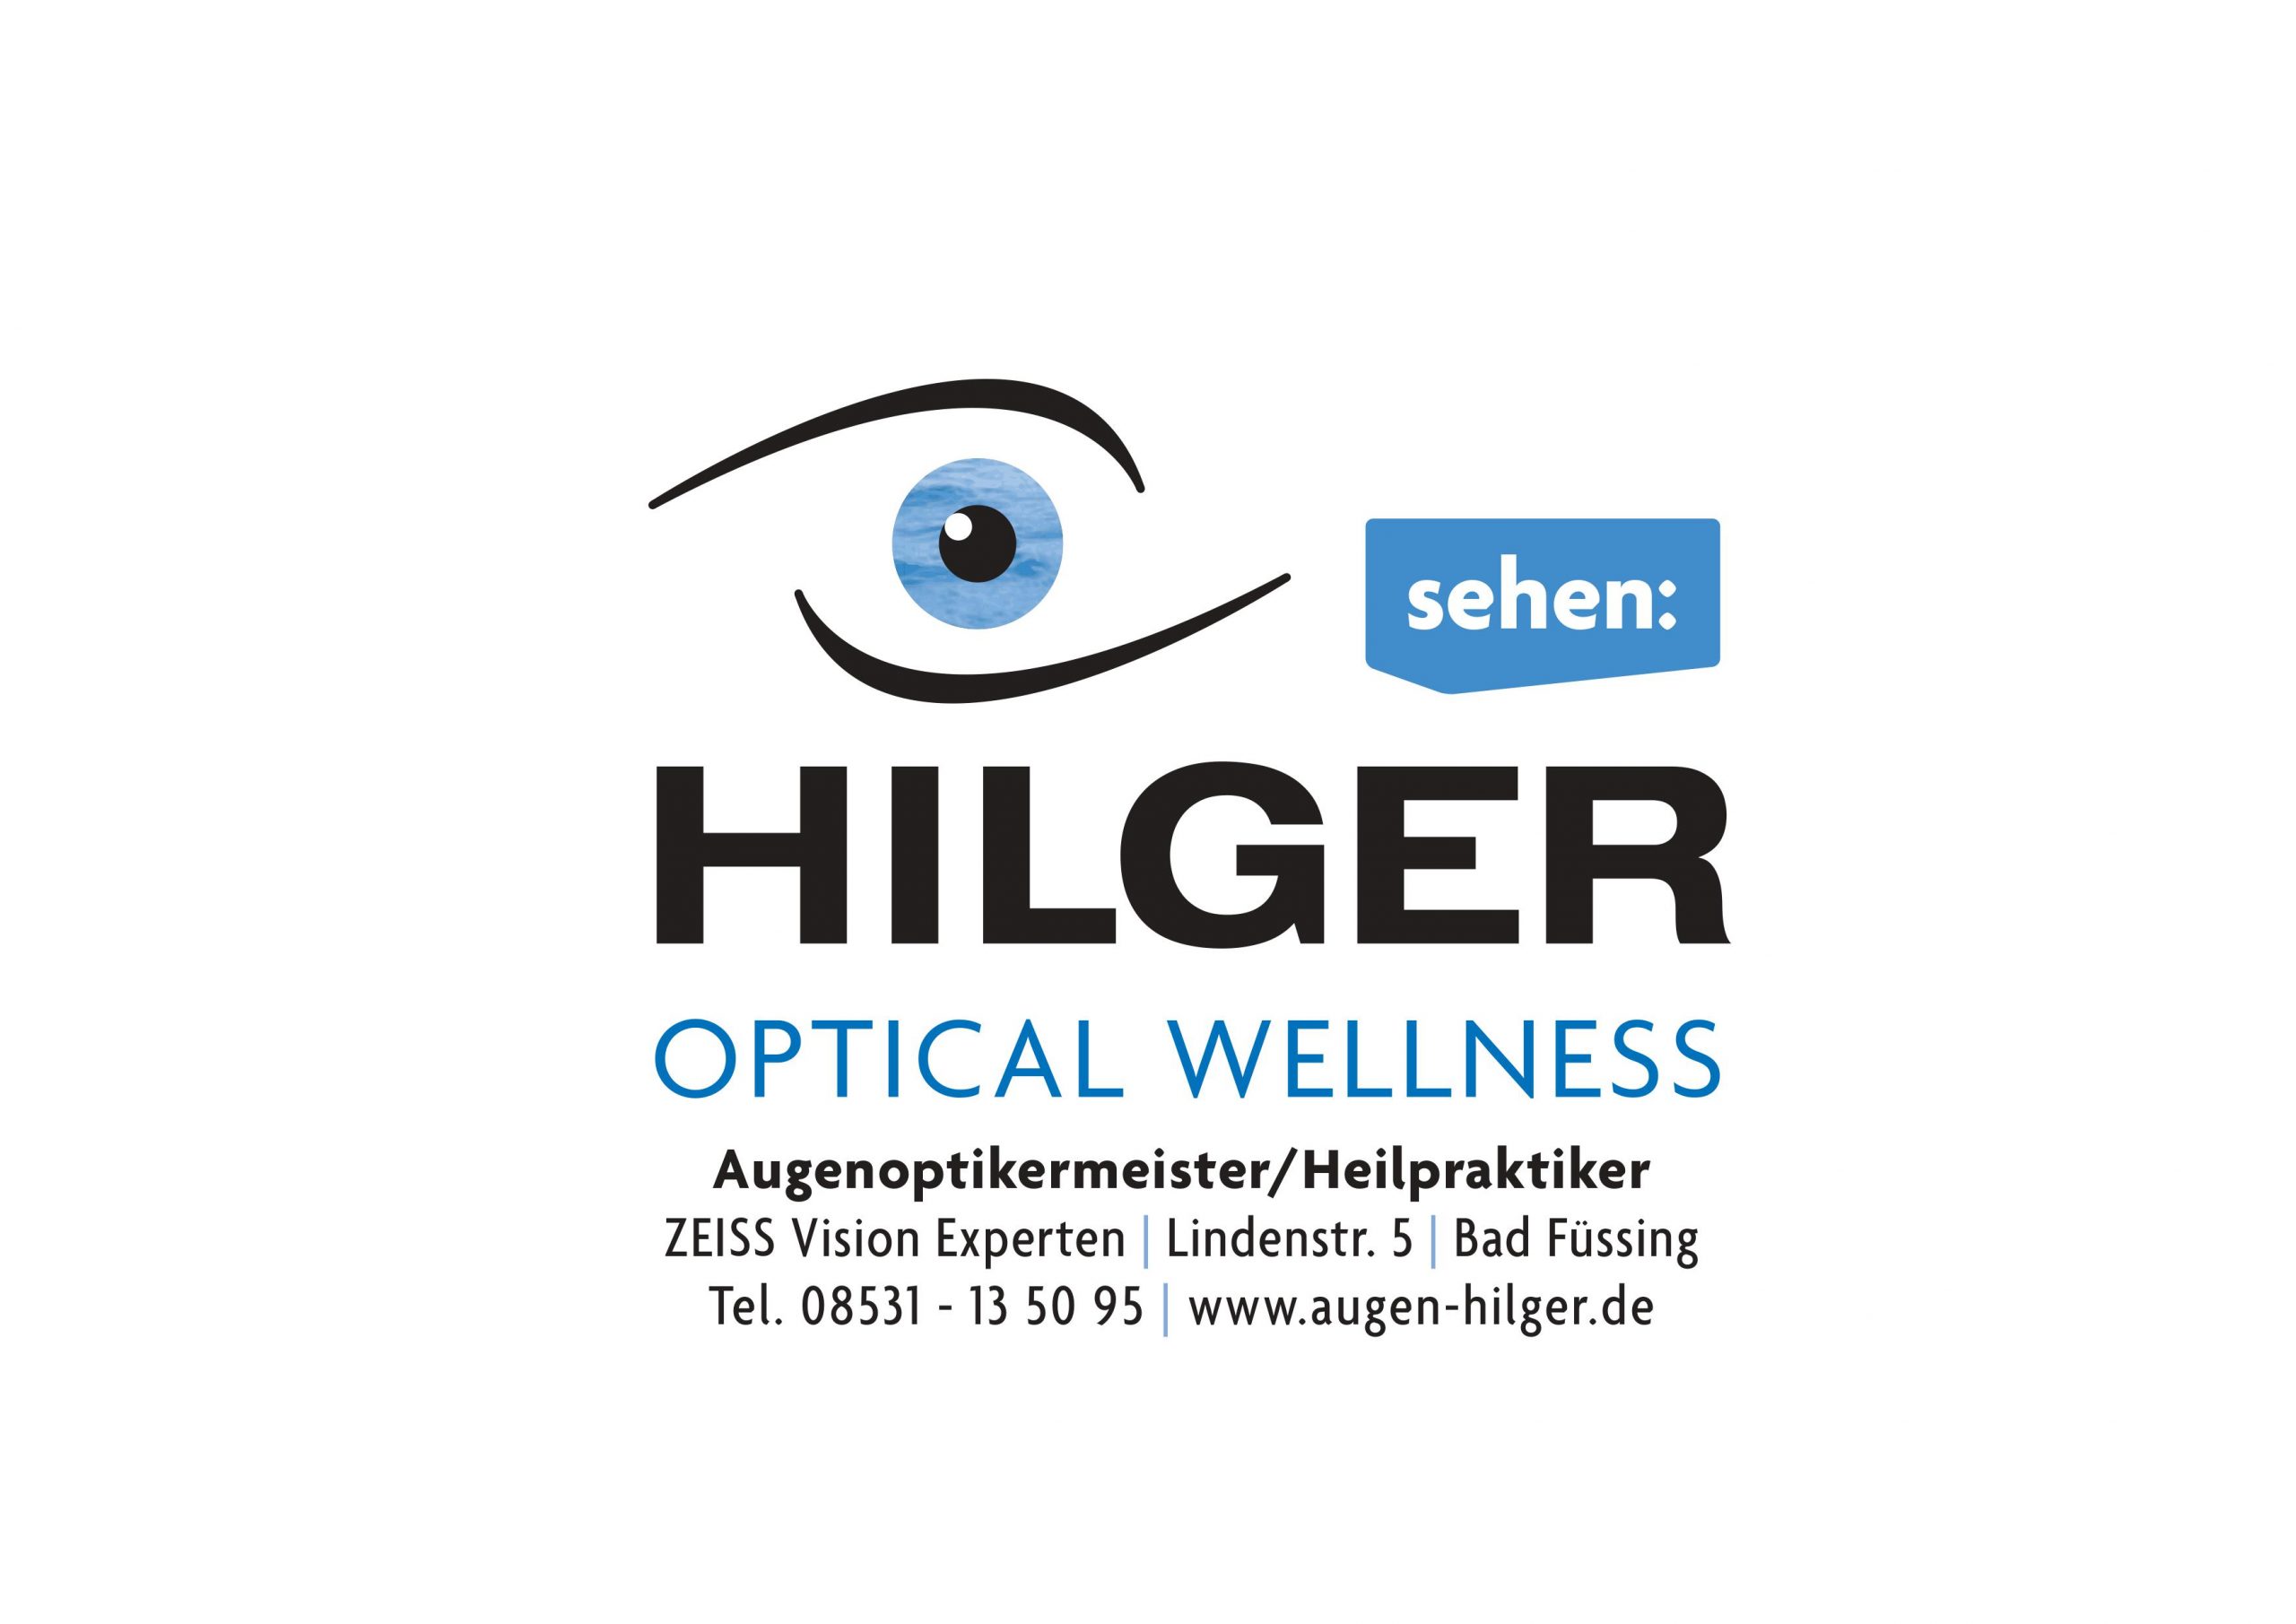 gerd-hilger-optical-wellness